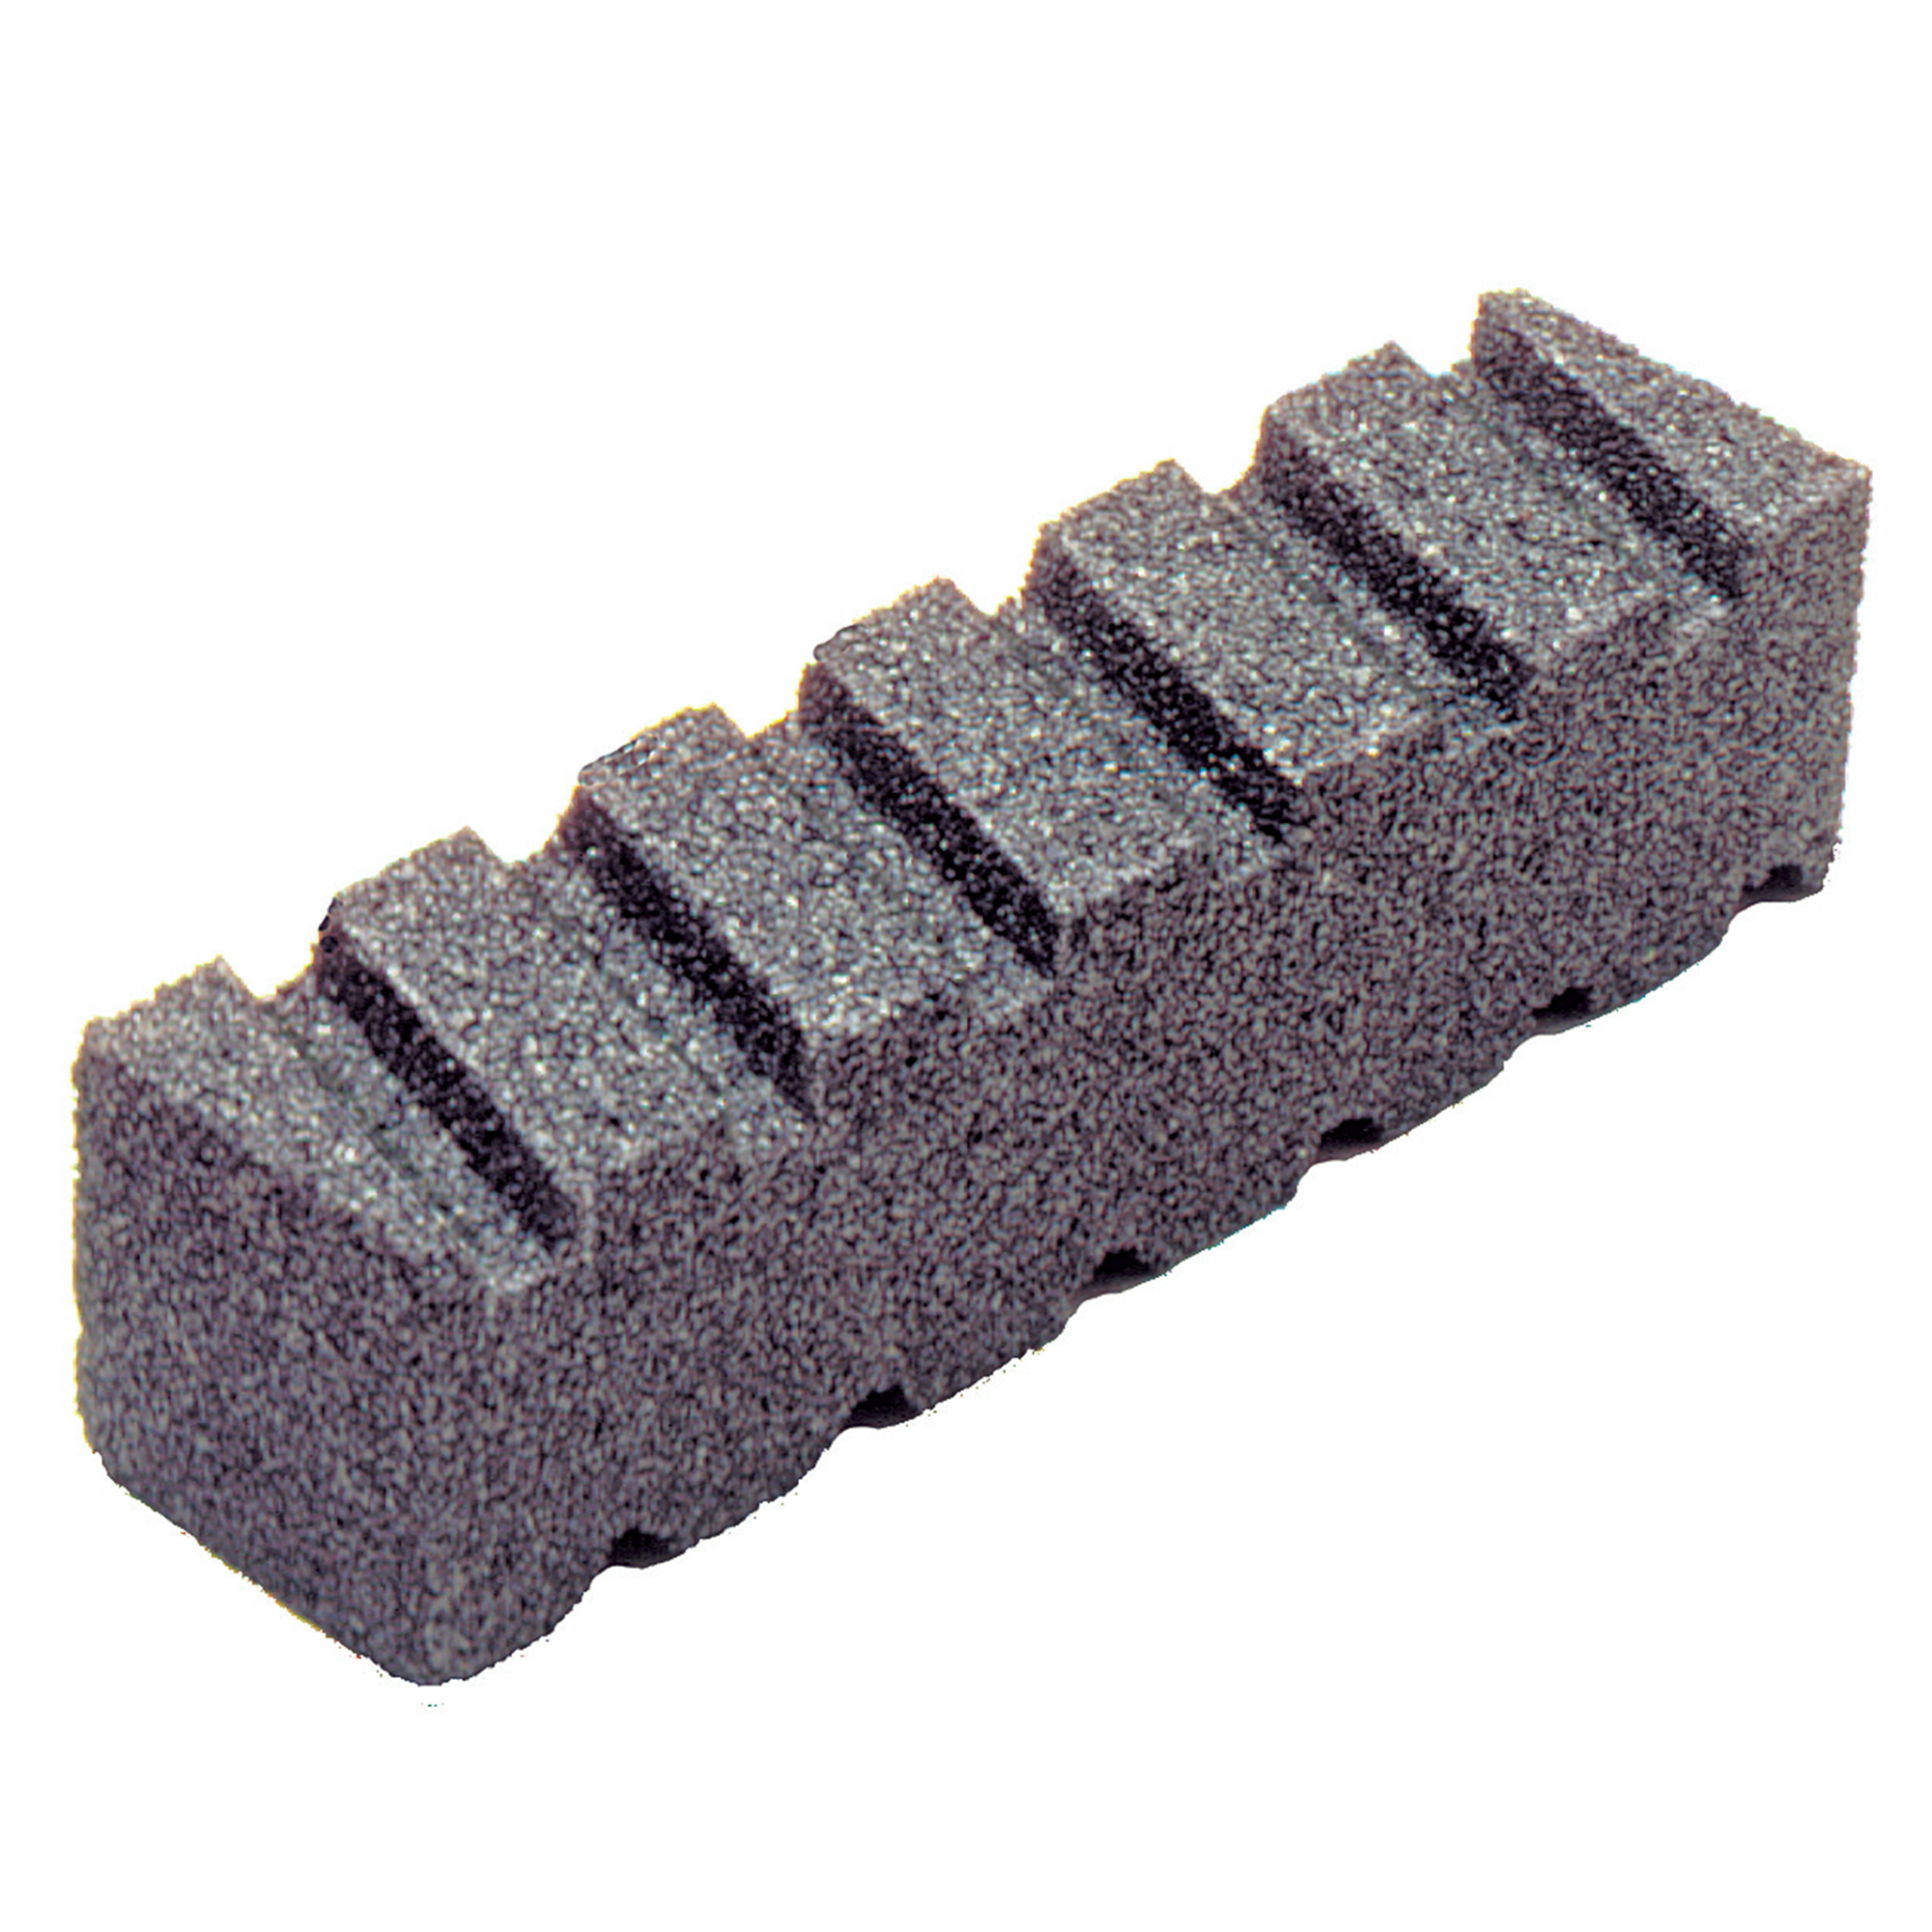 KRAFT TOOL CF482 Fluted Rub Brick,20 Grit,8"x2"x2 765139604825 